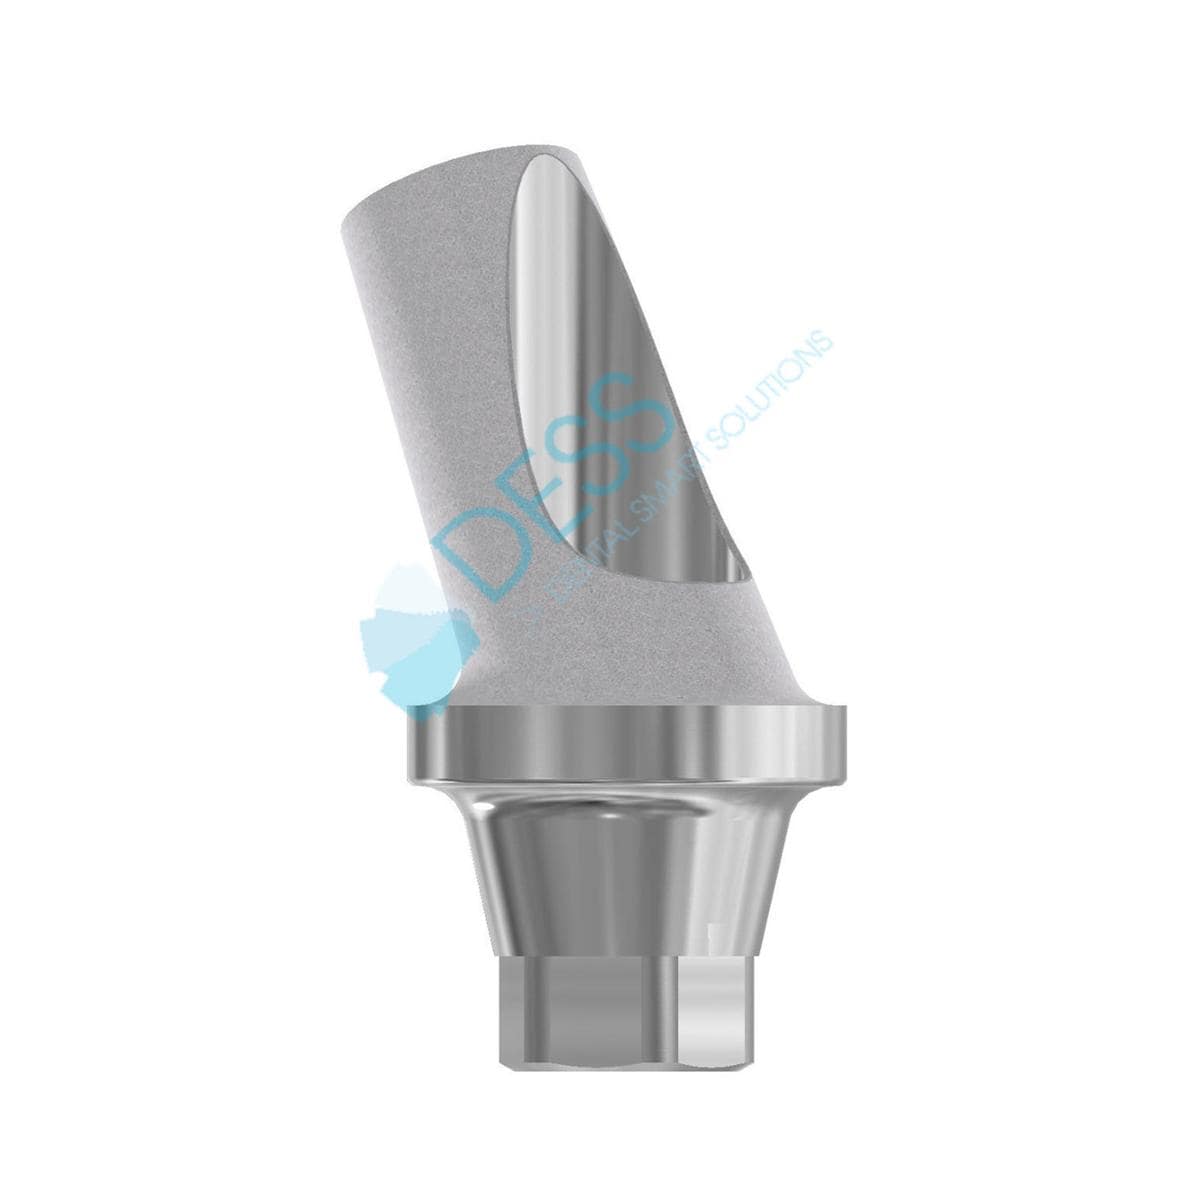 Titanabutment - kompatibel mit Nobel Active™ / Nobel Replace® CC - RP Ø 4,3 mm, 25° gewinkelt